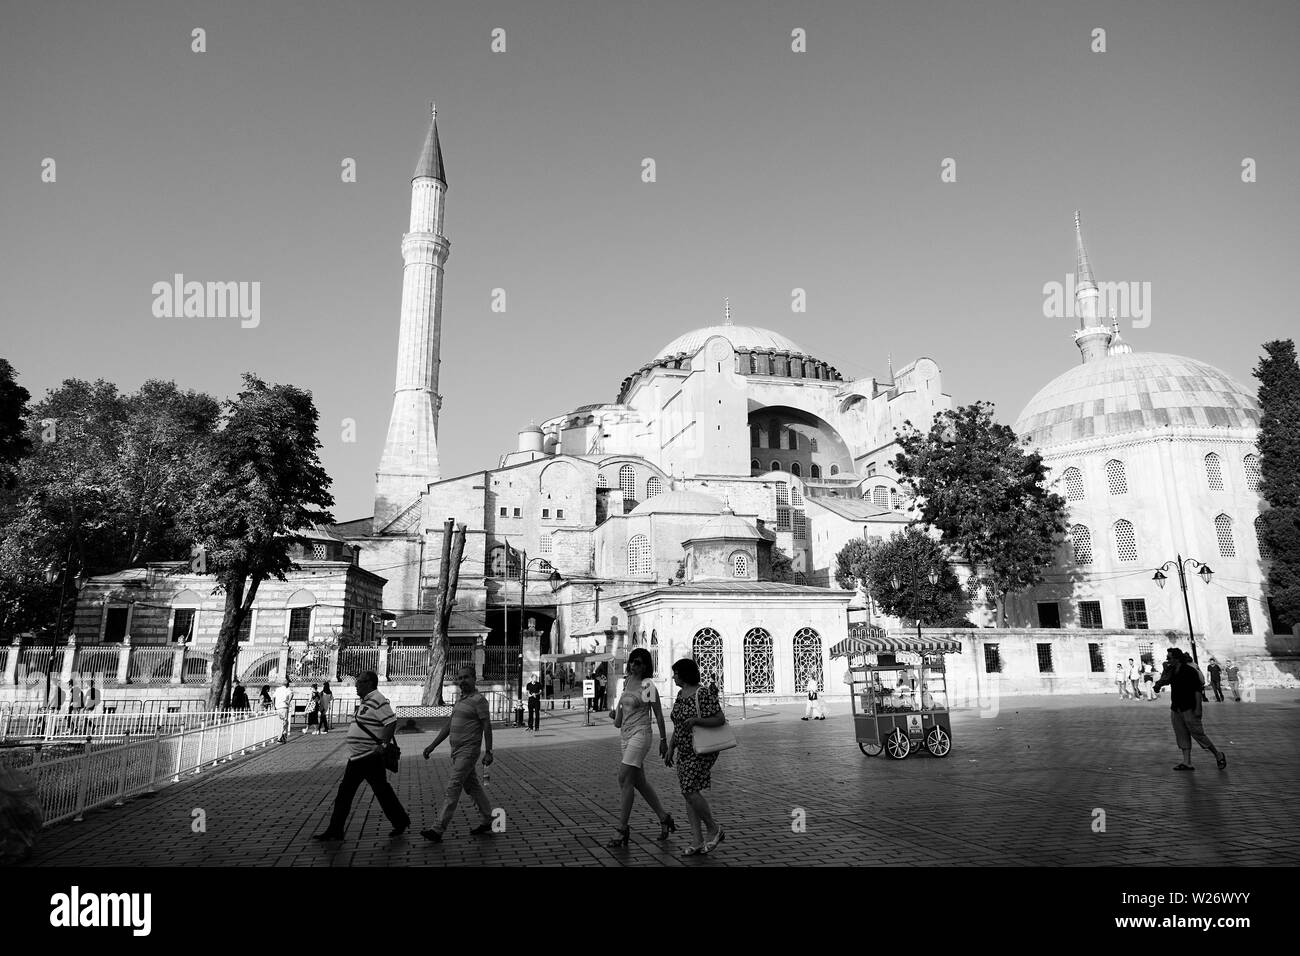 Istanbul, Türkei - 17. September 2017: externe Sicht auf die Hagia Sophia, ein Monument, das zunächst als eine Kirche, dann eine Moschee und heute ein Museum besucht von Mil geboren Stockfoto